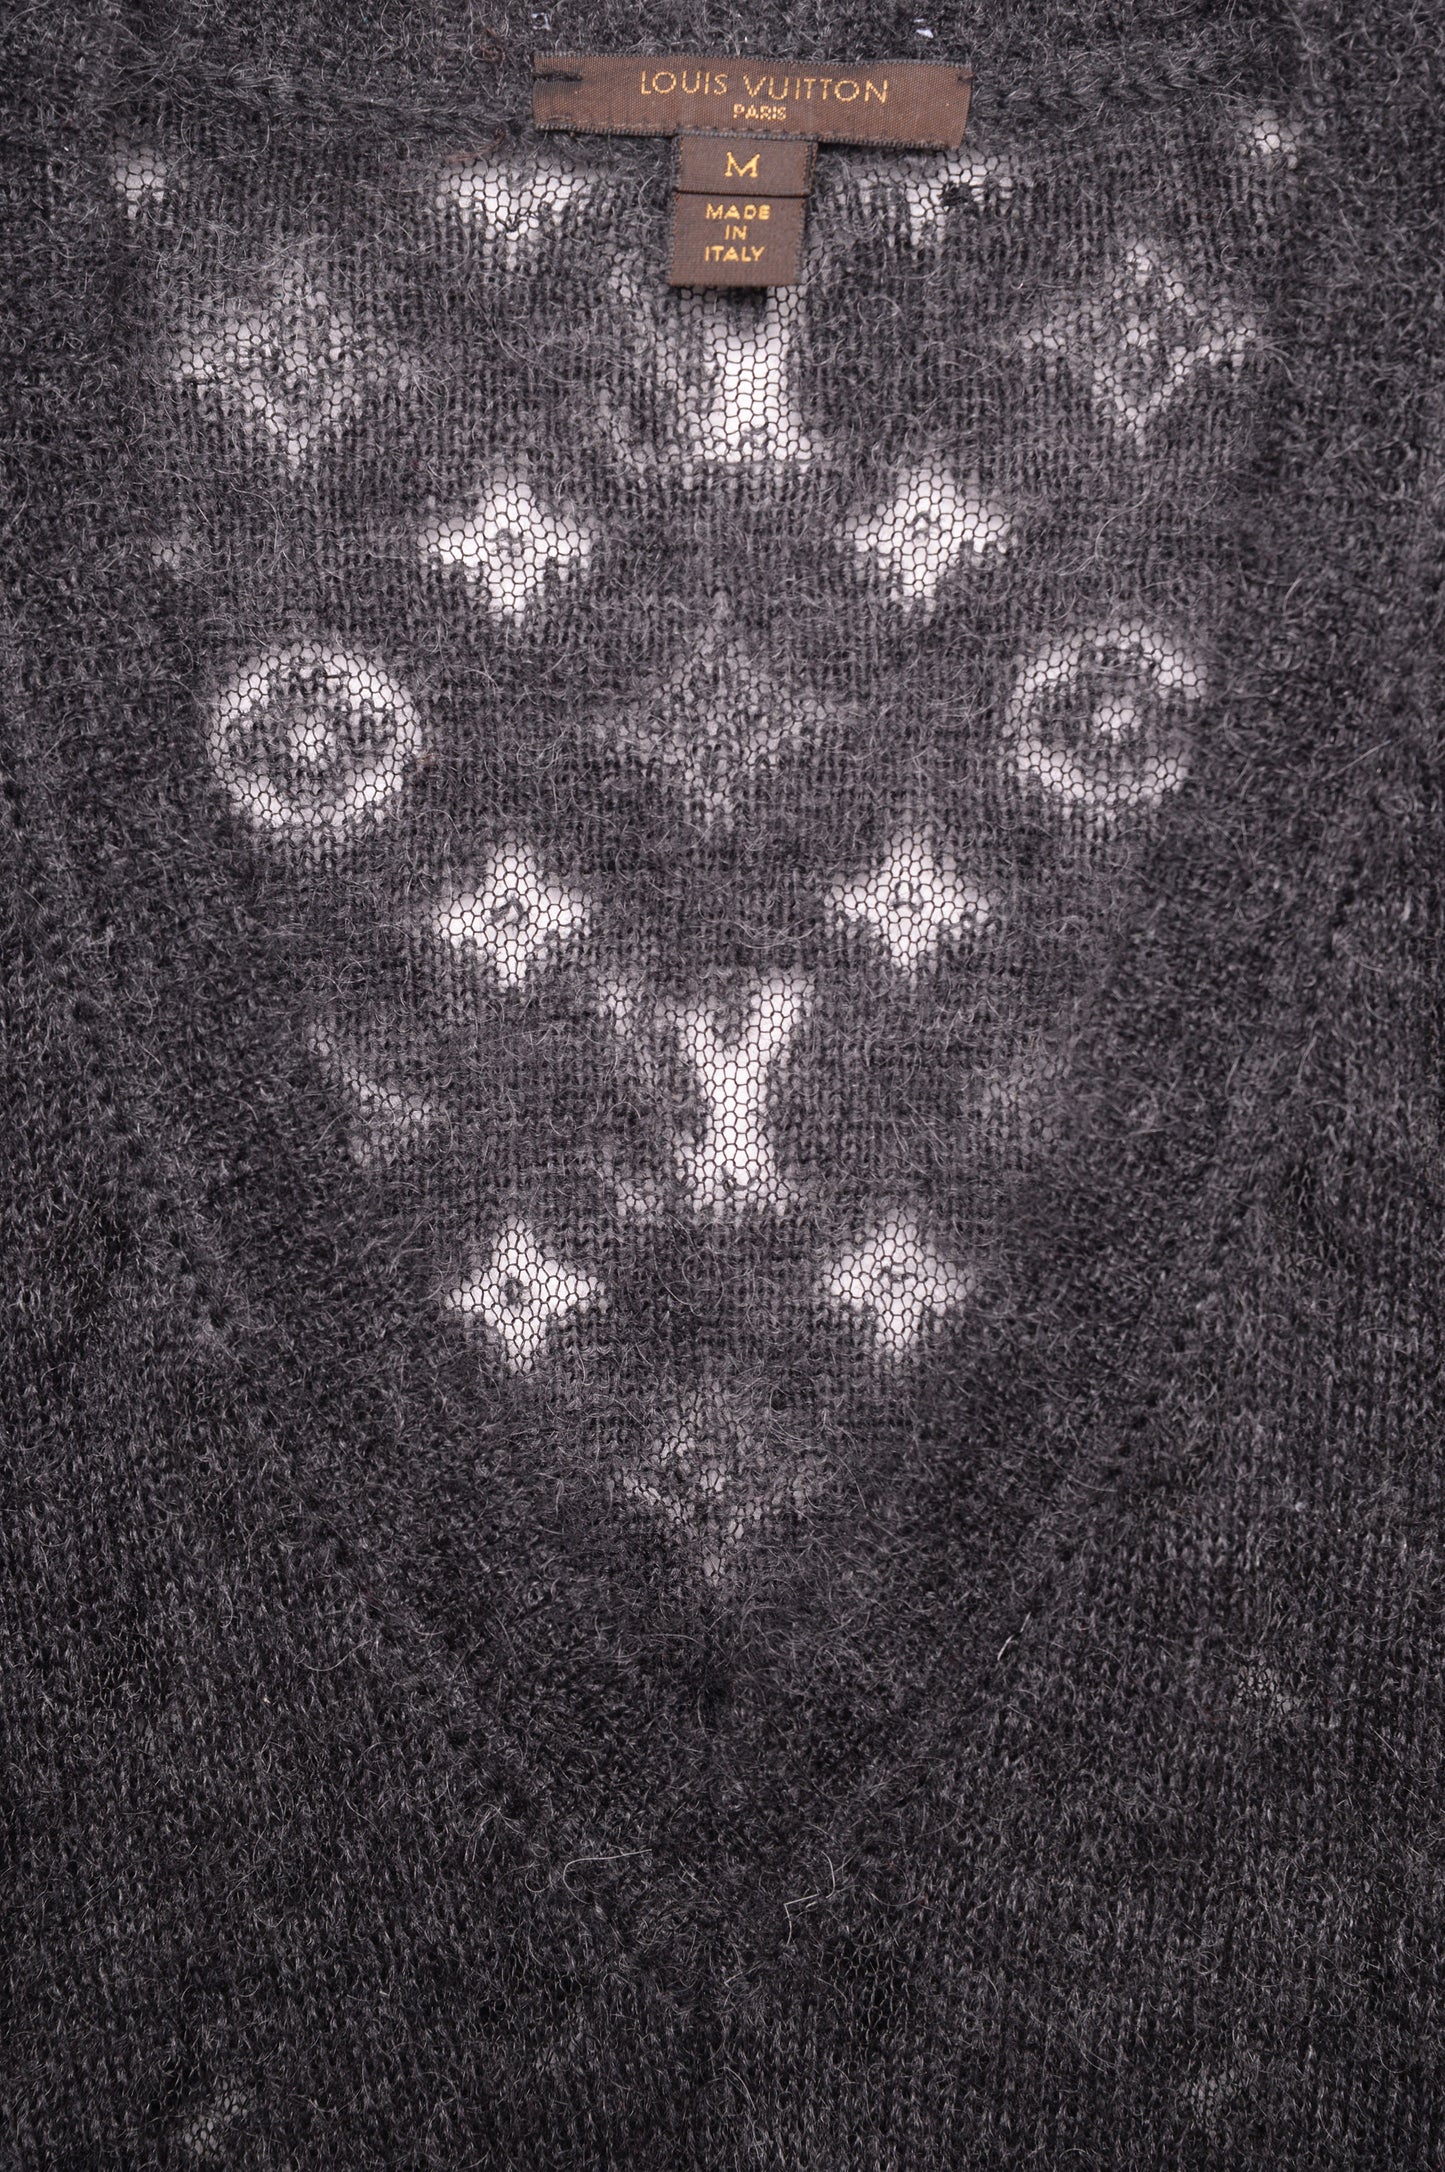 Louis Vuitton Open Knit Mohair Sweater